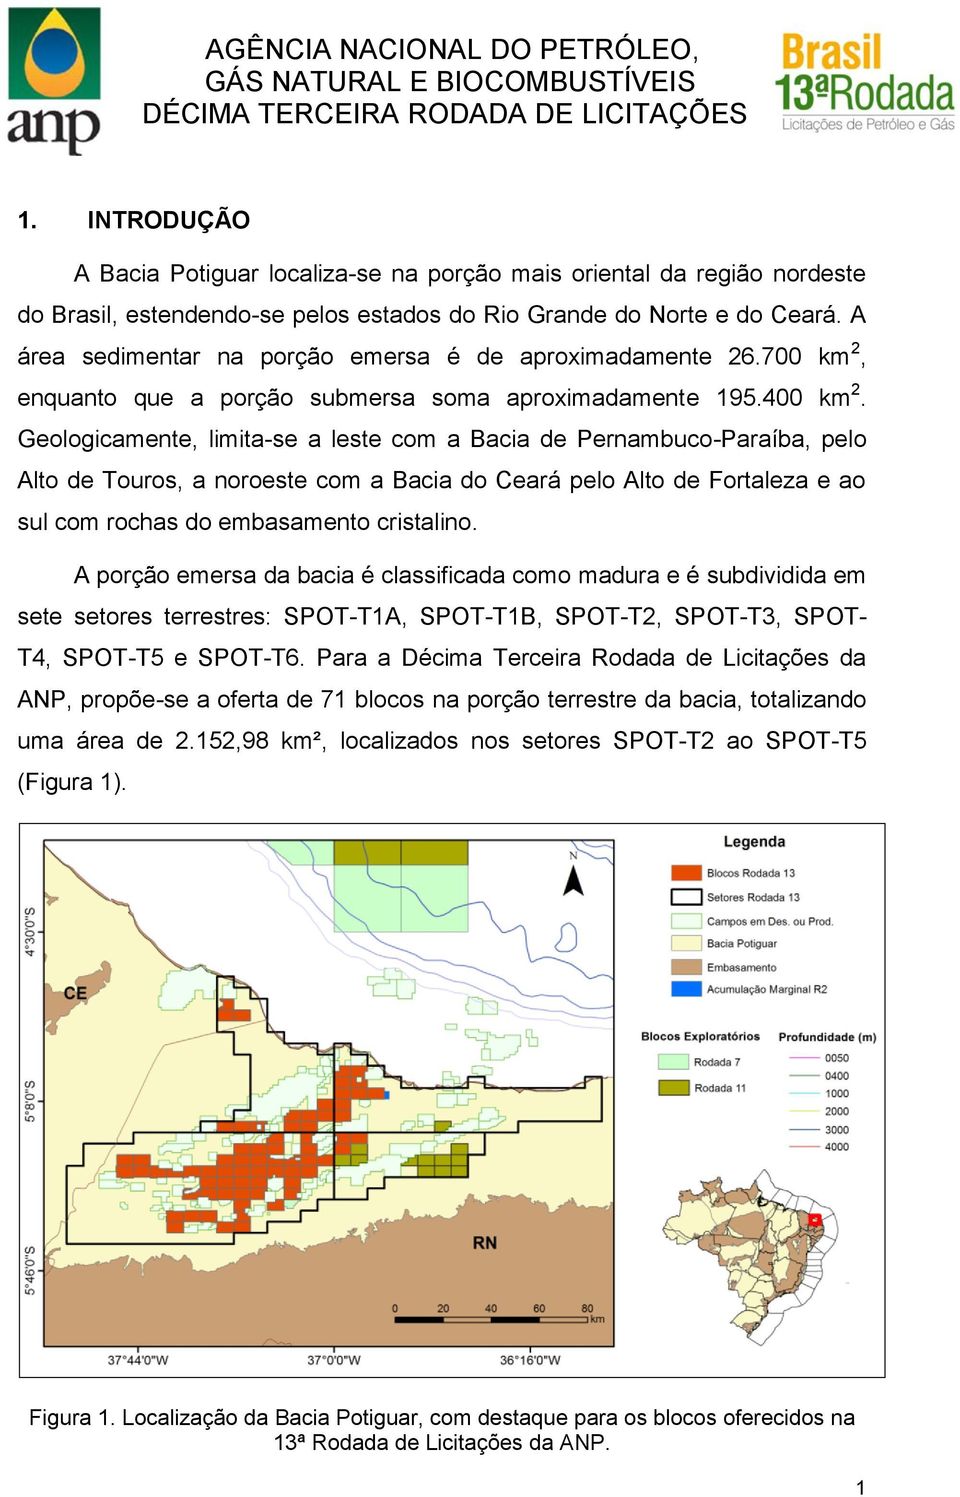 Geologicamente, limita-se a leste com a Bacia de Pernambuco-Paraíba, pelo Alto de Touros, a noroeste com a Bacia do Ceará pelo Alto de Fortaleza e ao sul com rochas do embasamento cristalino.